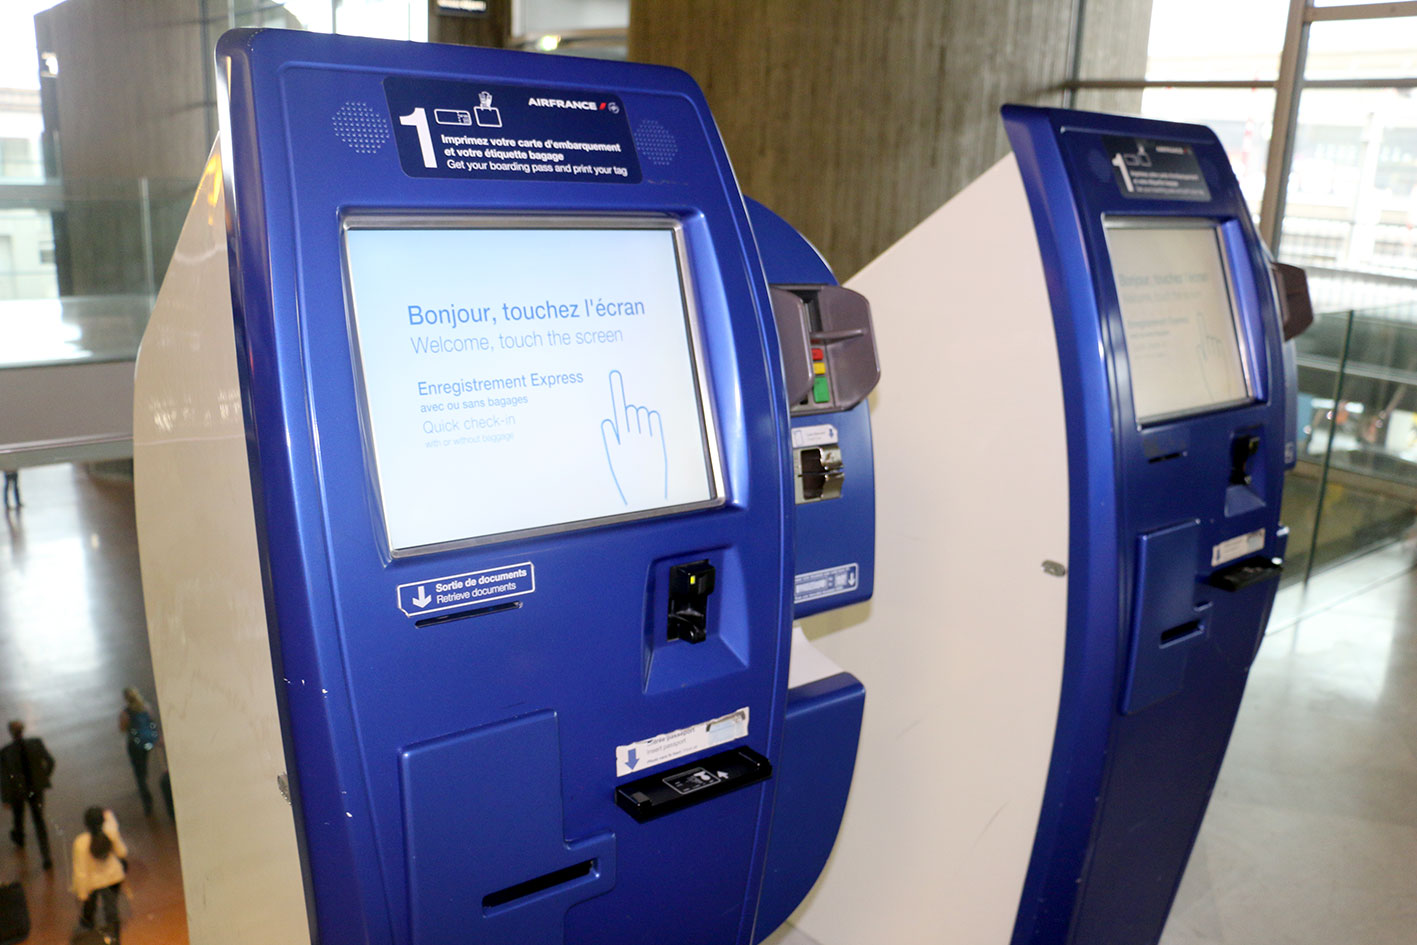 Les BLS (Bornes Libre-Service) sont désormais entrées dans la pratique courante des clients d’Air France. Elles permettent de s’enregistrer, choisir son siège et d’imprimer sa carte d’embarquement en moins de 30 secondes.